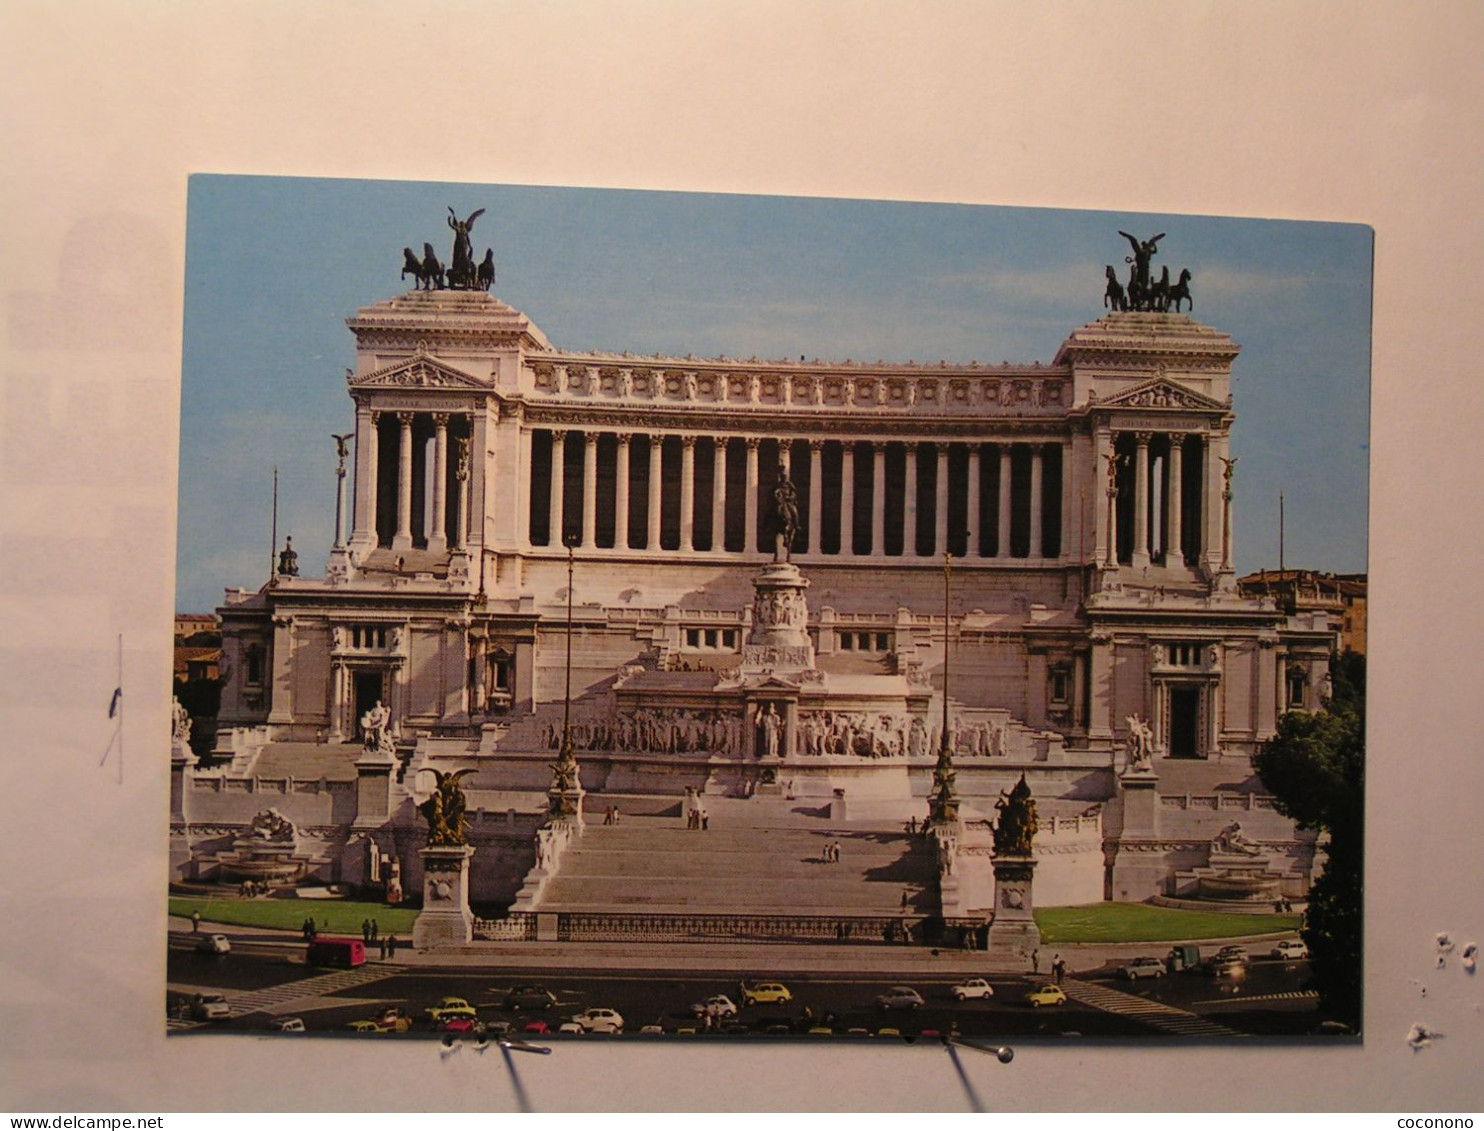 Roma (Rome) - Altare Della Patria - Andere Monumente & Gebäude